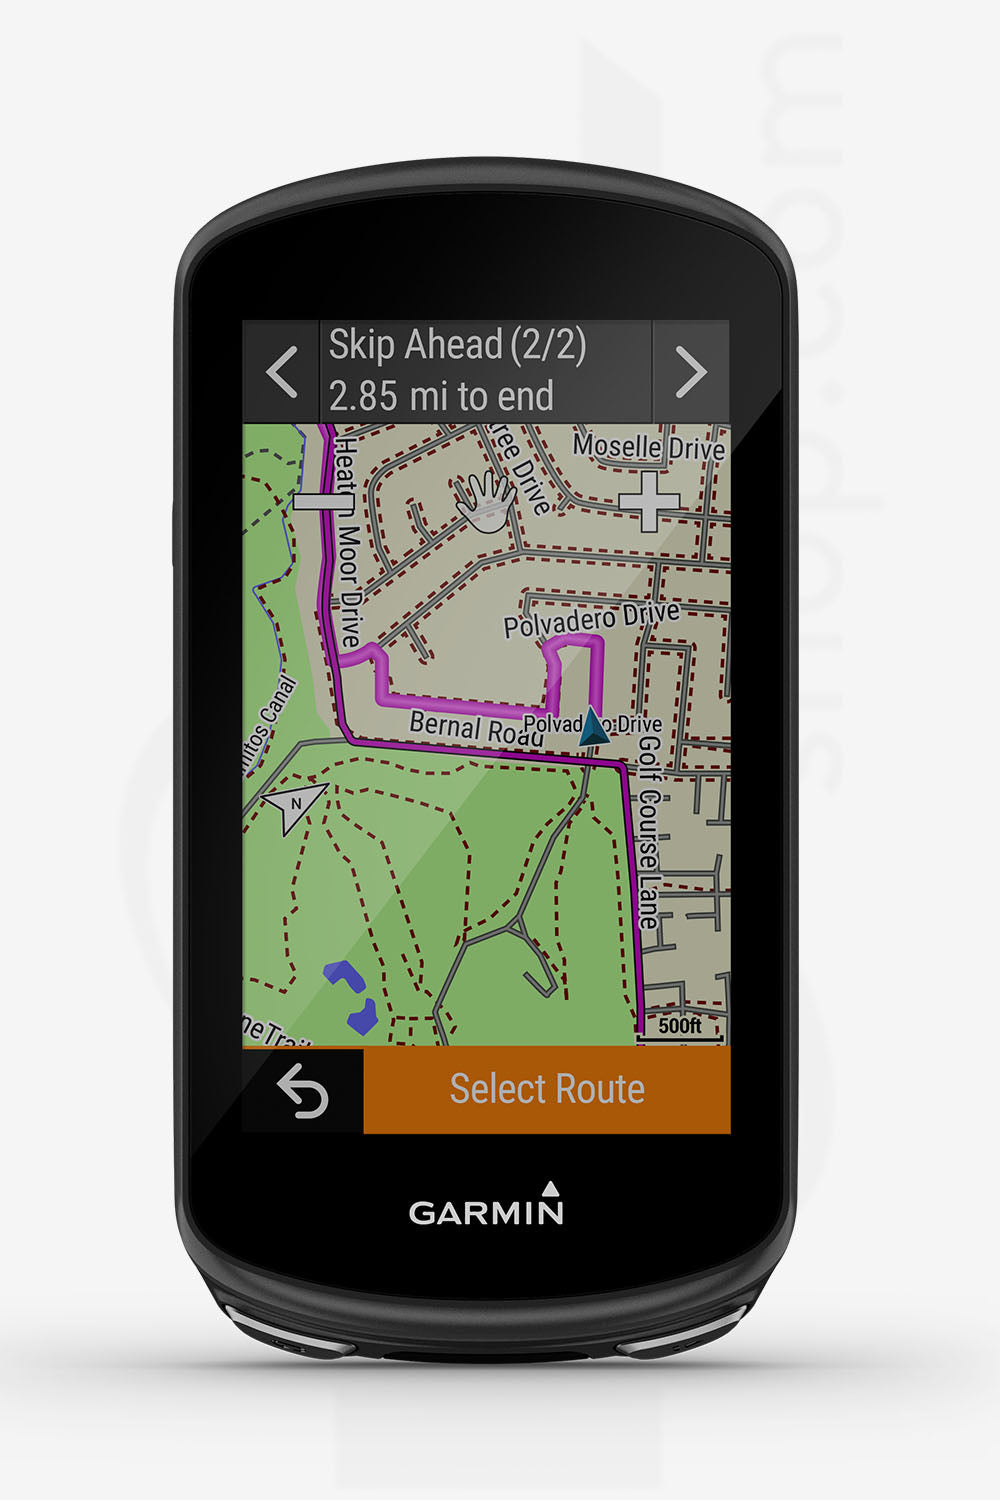 GPS GARMIN EDGE 1030 PLUS BUNDLE. O que esperar deste GPS 